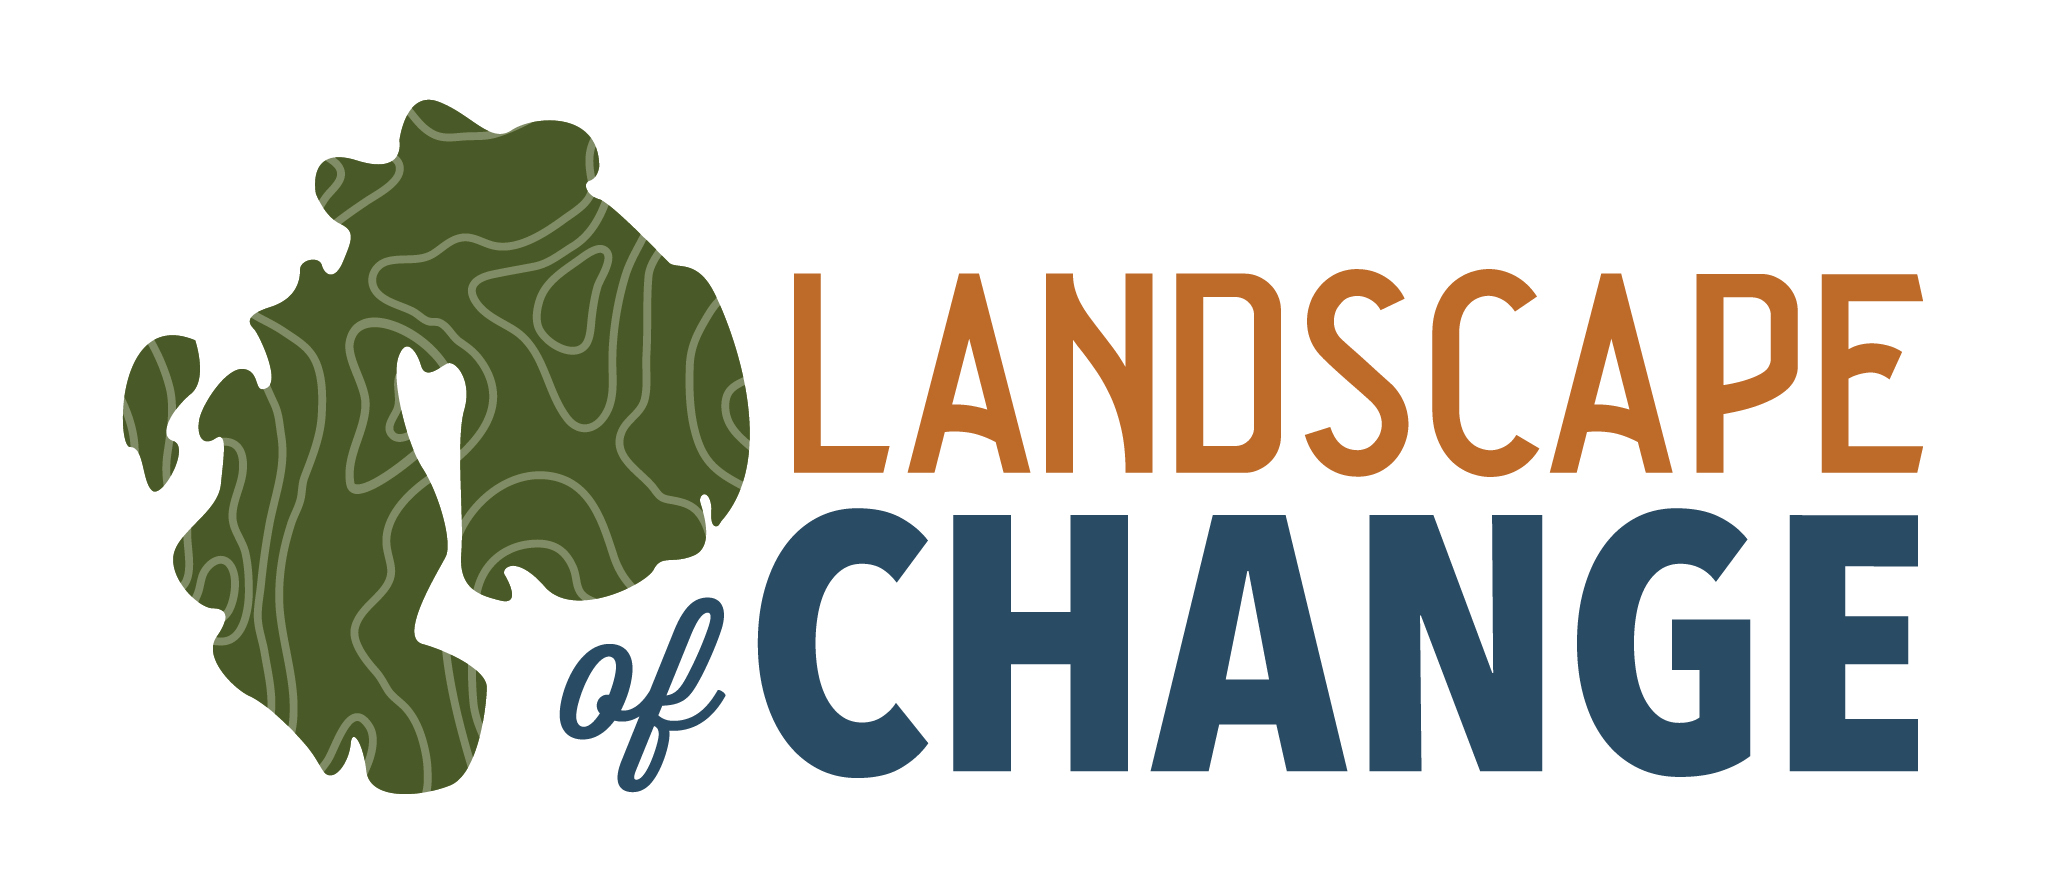 Landscape of Change logo in full color